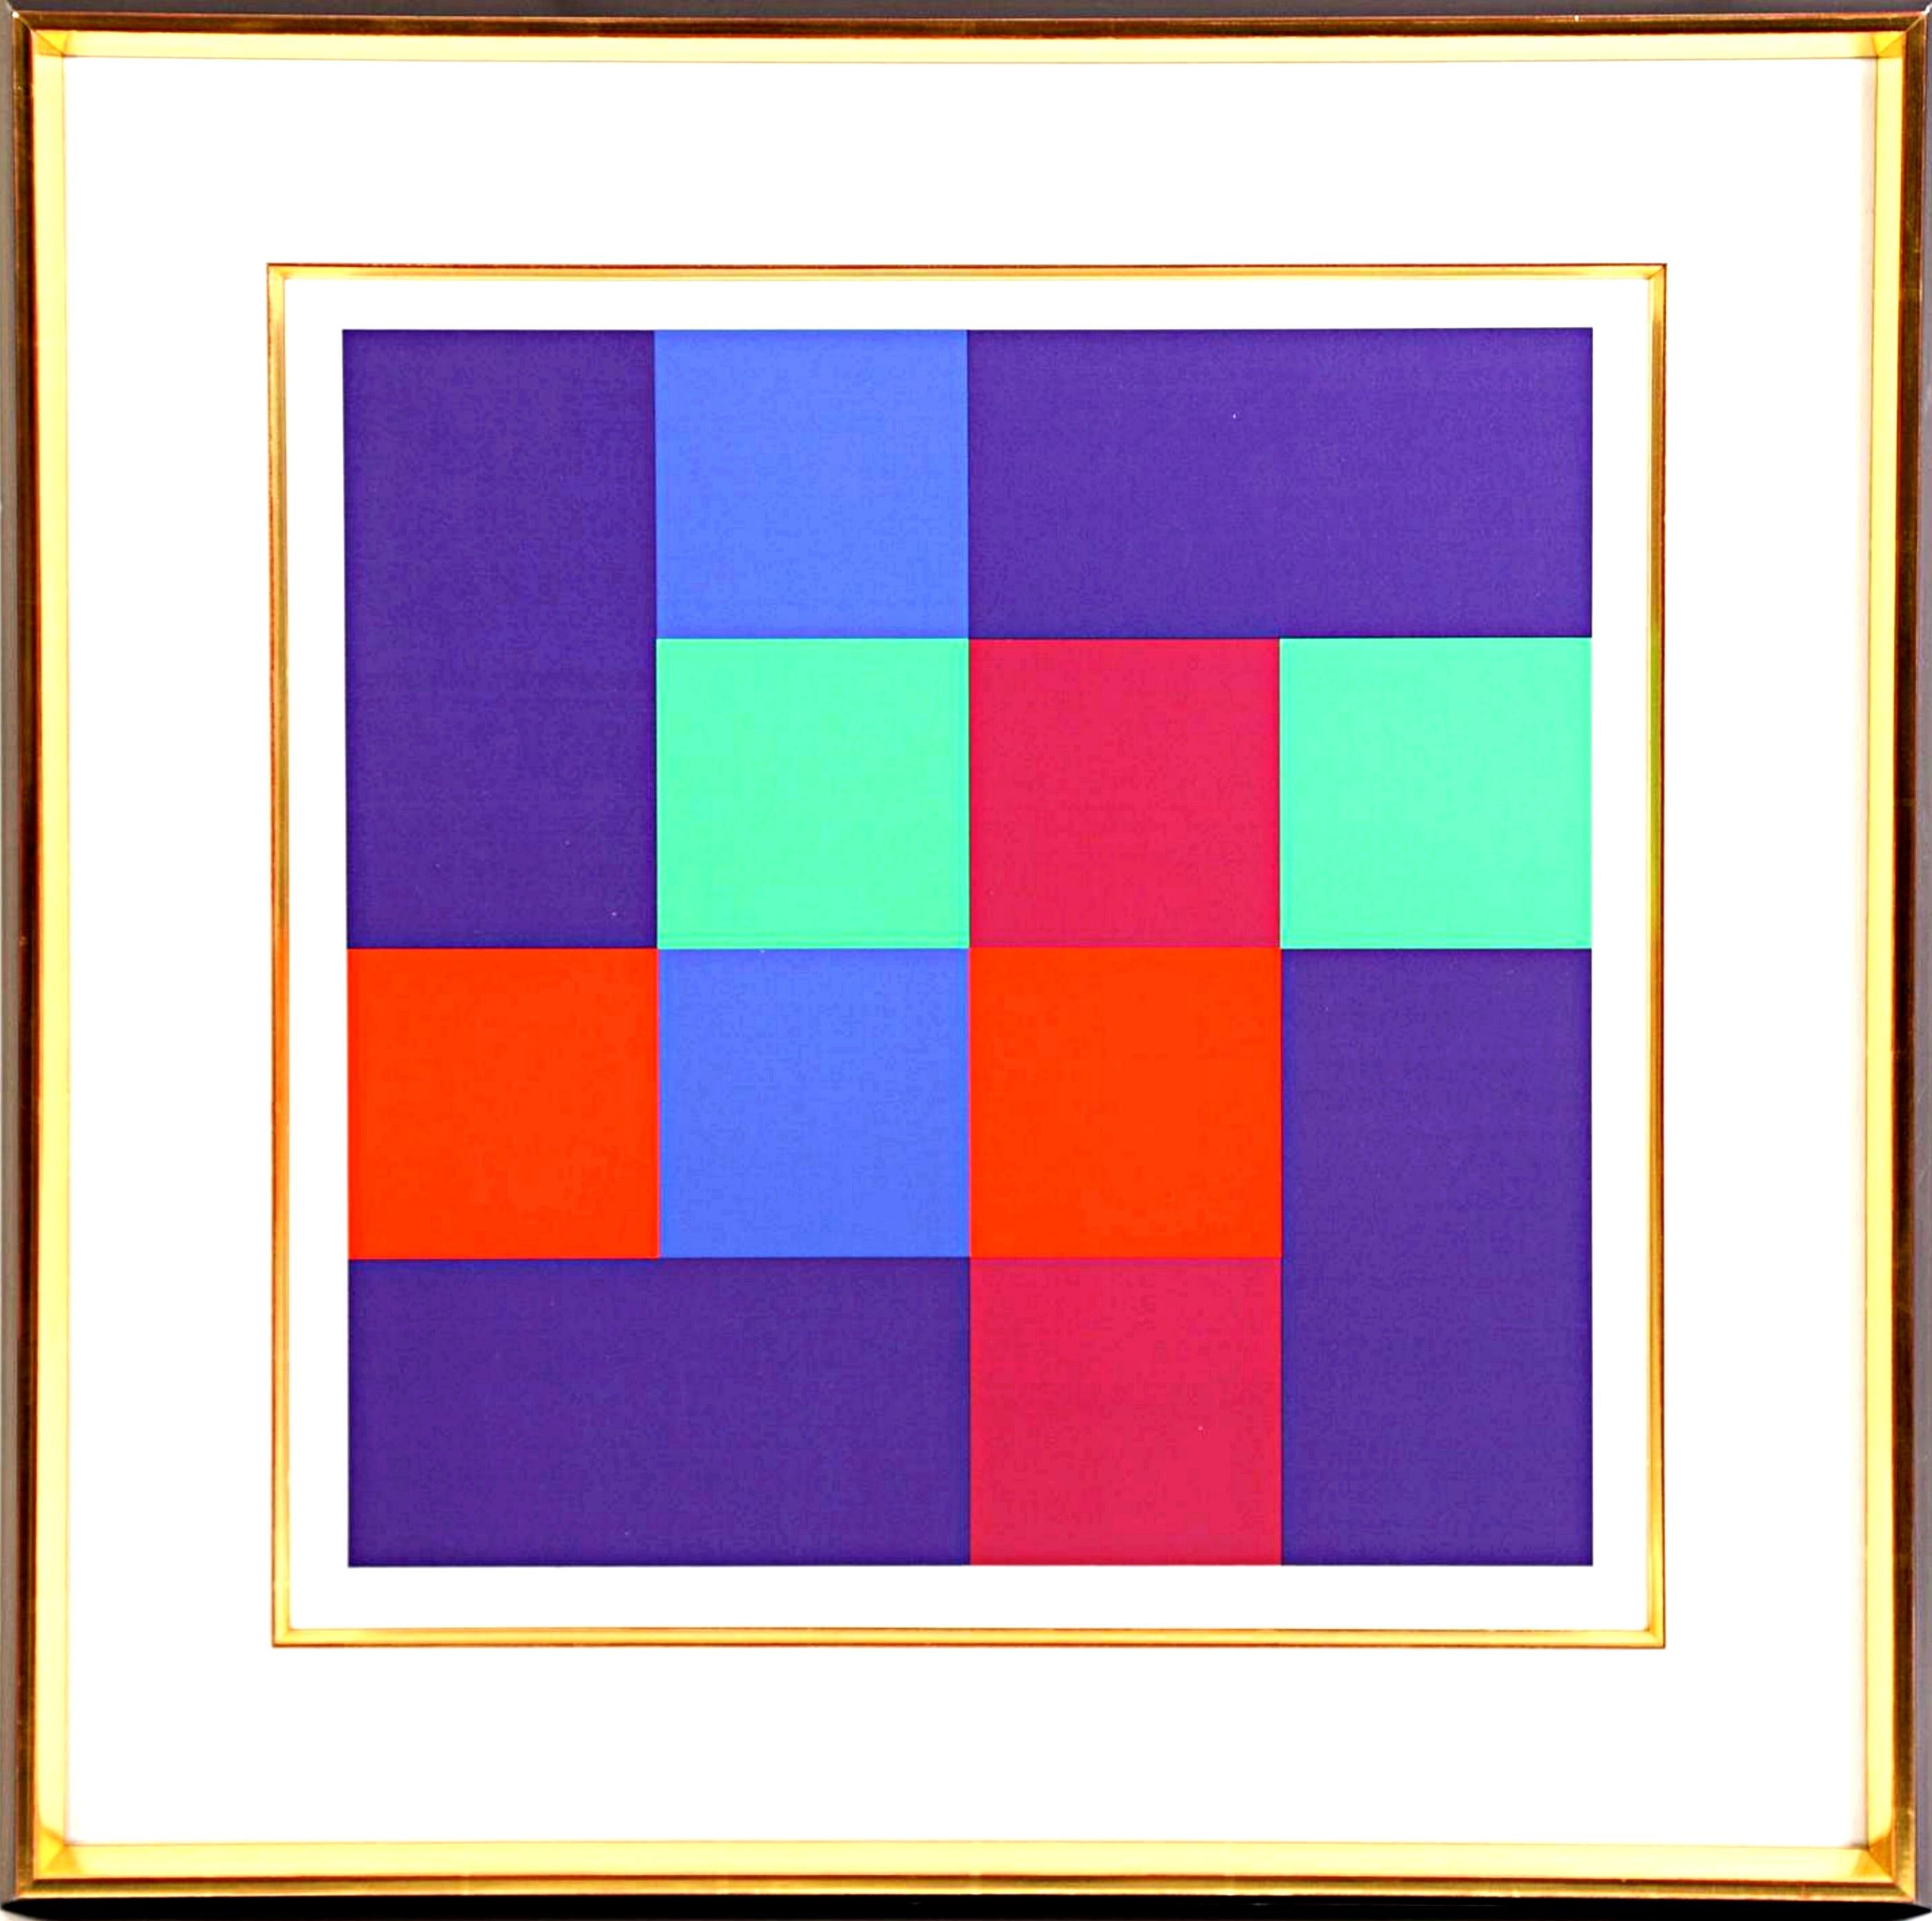 Siebdruck: Acht ergänzende Quadrate mit vier Rechtecken und geometrischer Abstraktion in Rechteck